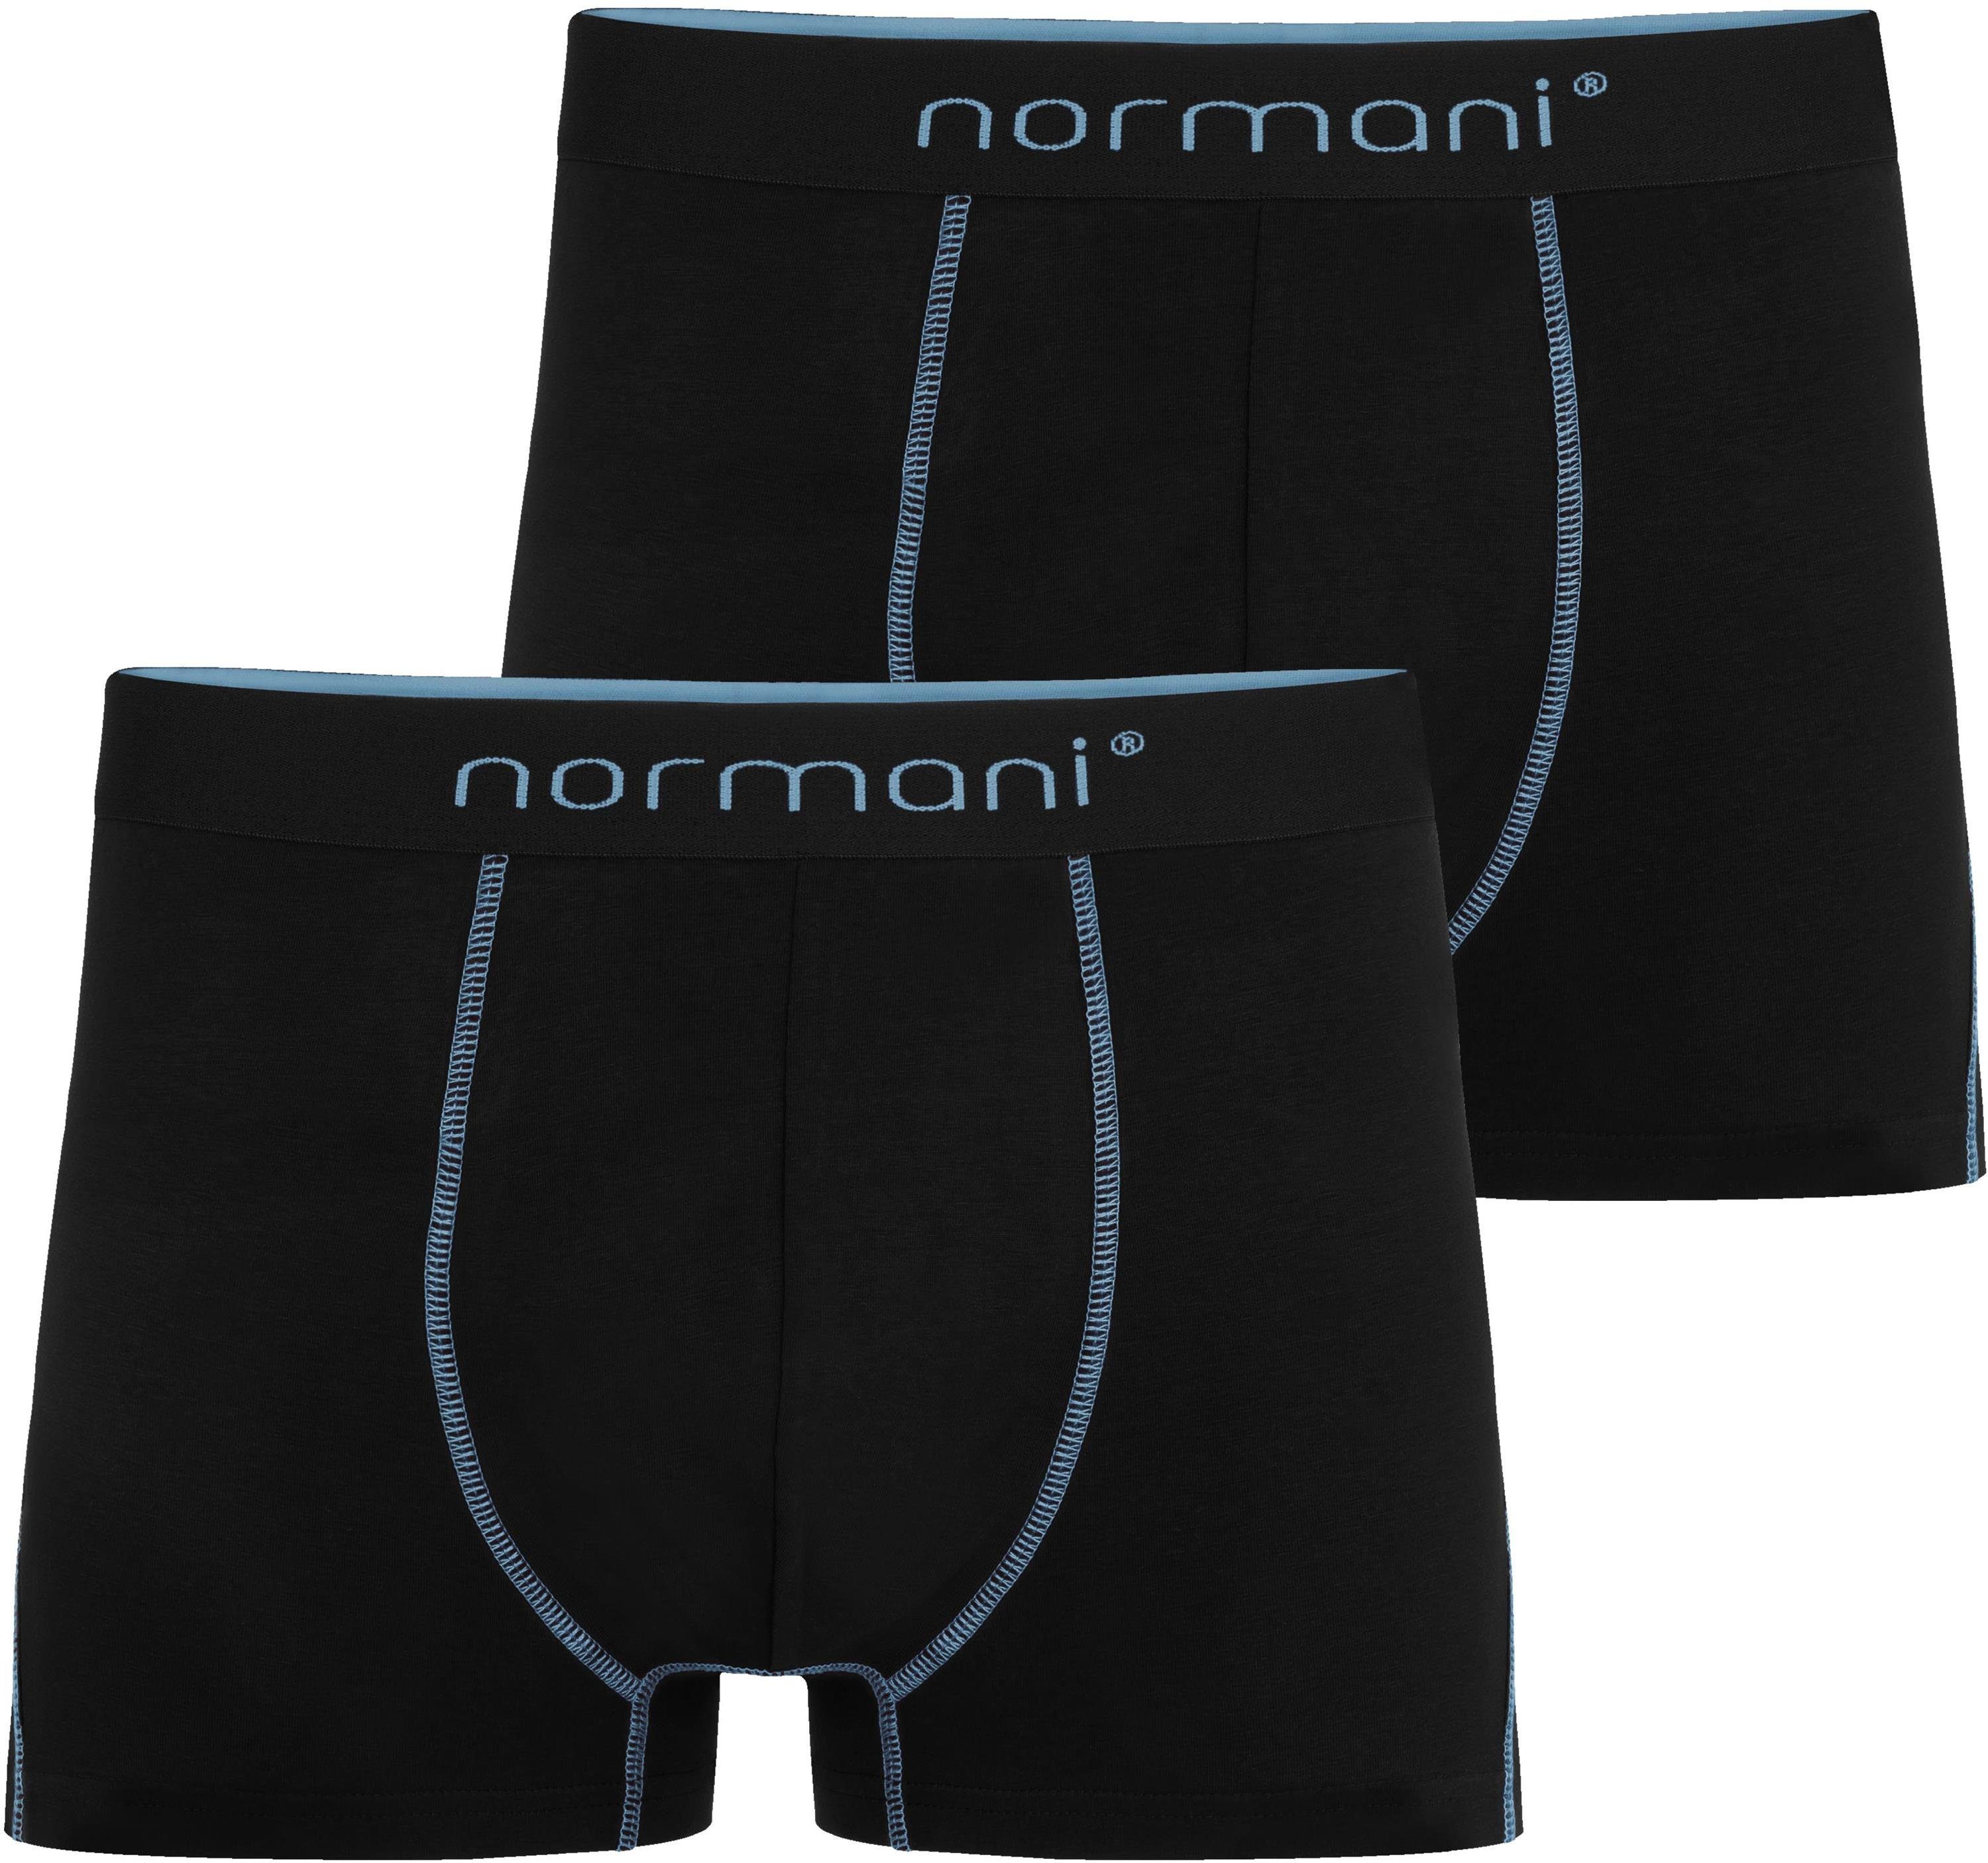 Männer Herren Hellblau Boxershorts Baumwolle für 2 normani Stanley Boxershorts aus atmungsaktiver Unterhose